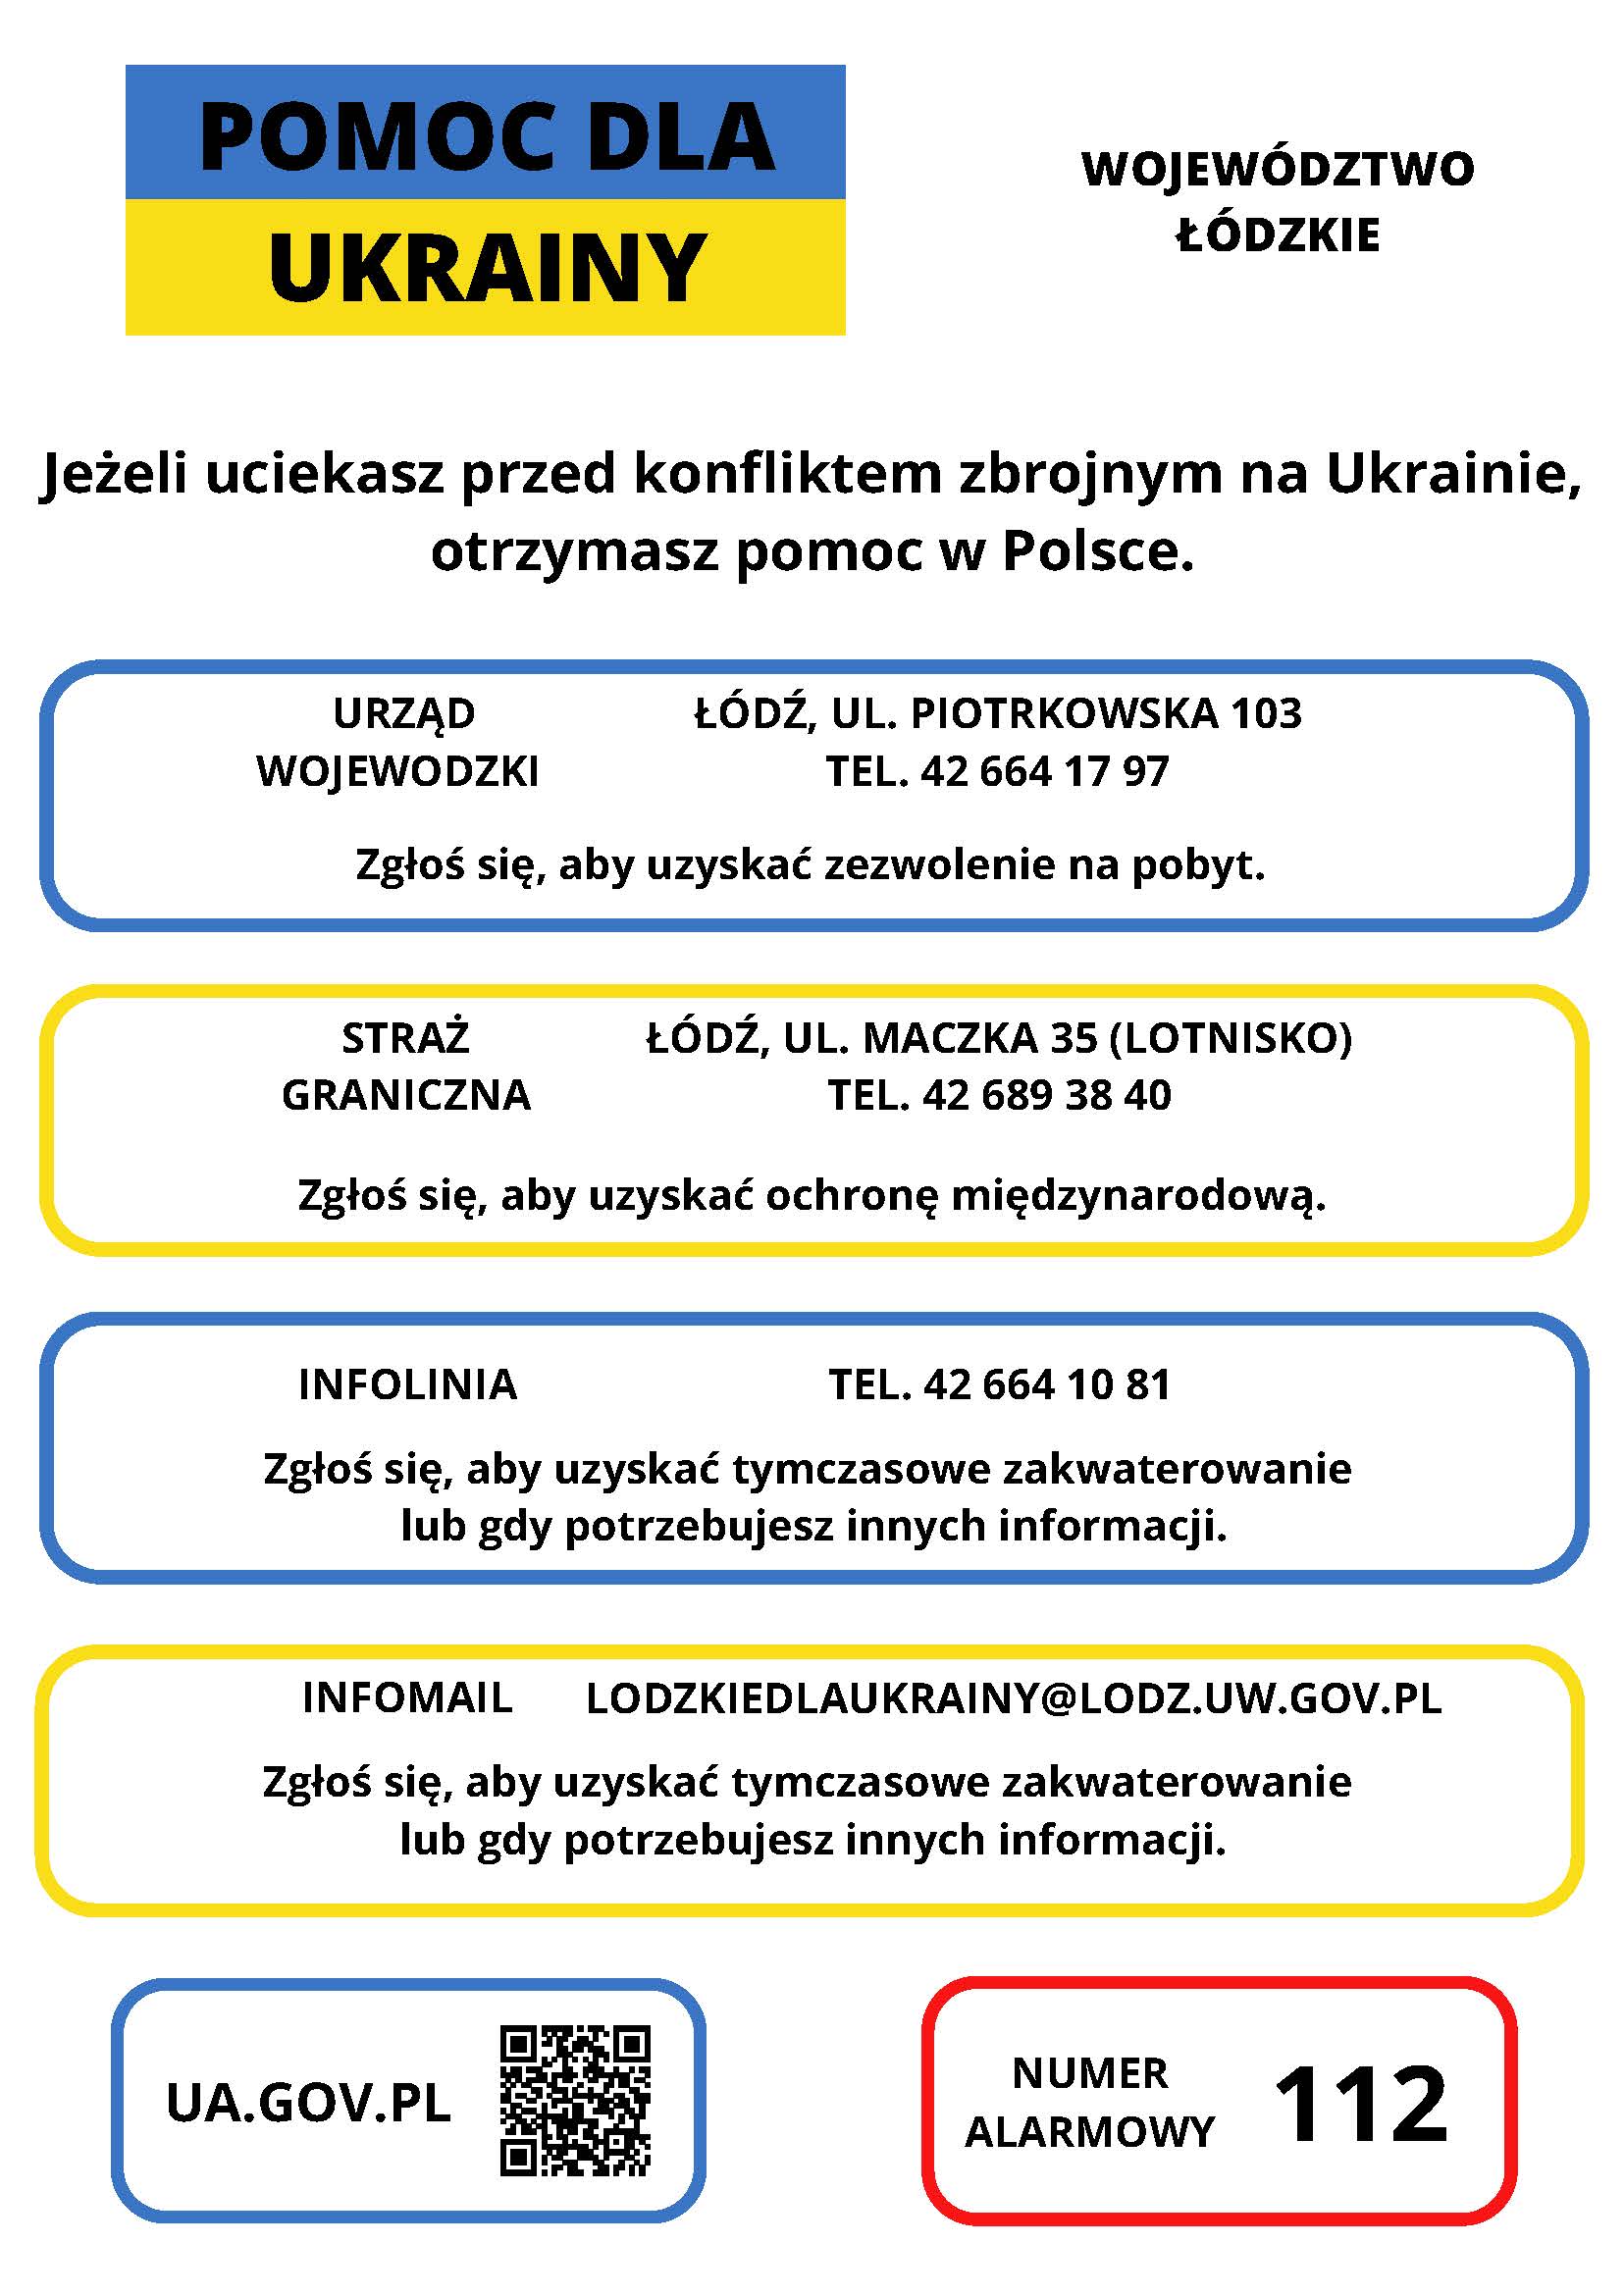 Grafika z napisami w języku polskim zawierająca dane urzędu wojewódzkiego, straży granicznej i infolinii